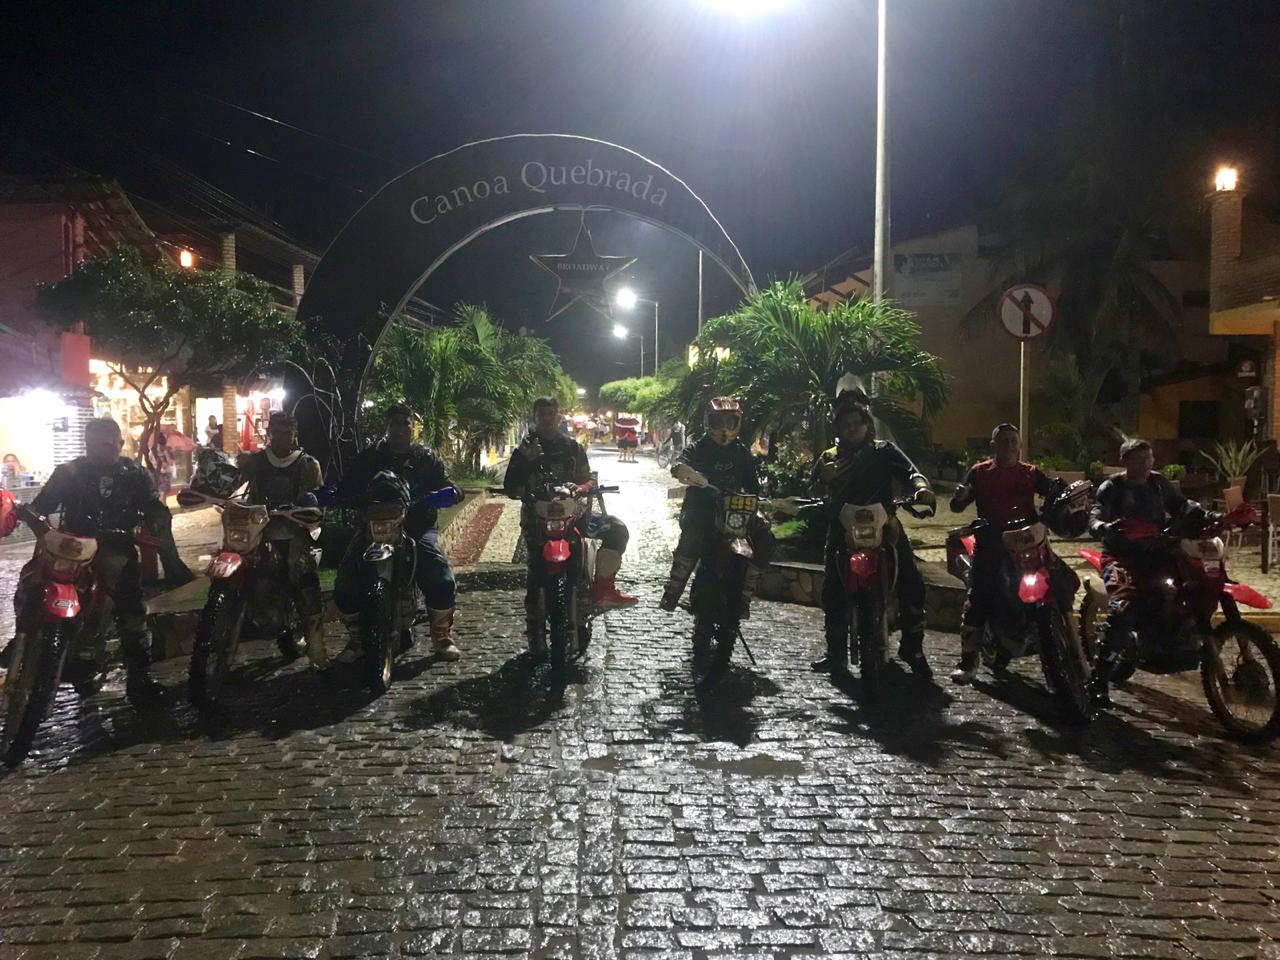 ‘Expedição Iguatu a Canoa Quebrada’ motiva motociclistas